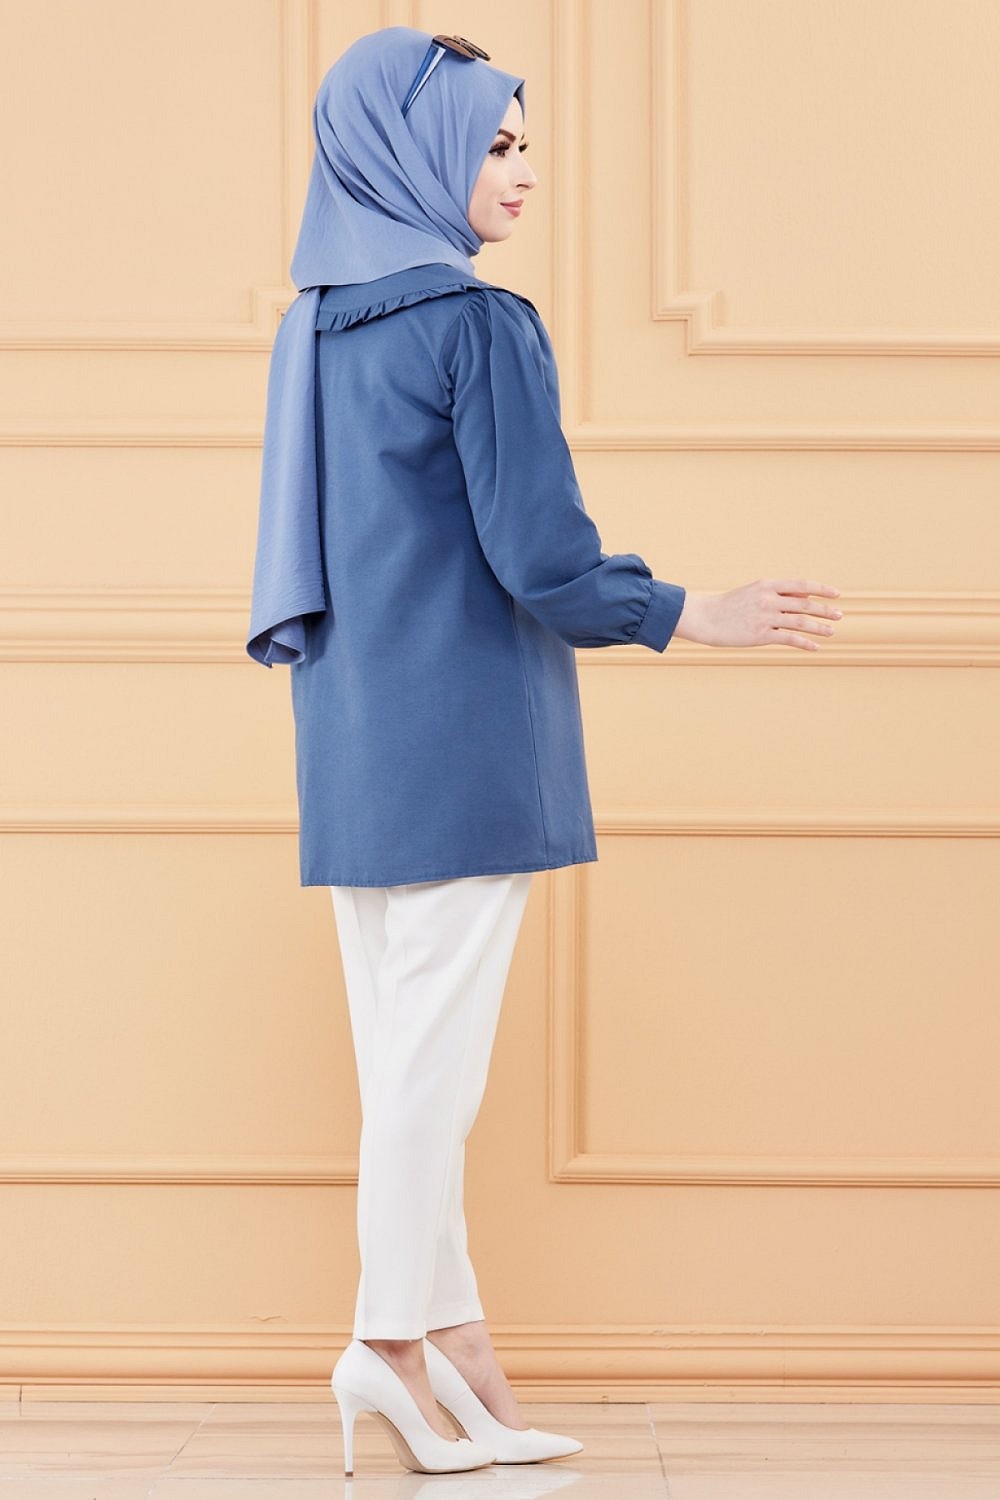 Chemise à froufrou (Vetement femme voilée en ligne) - Couleur bleu pétrole  - Prêt à porter et accessoires